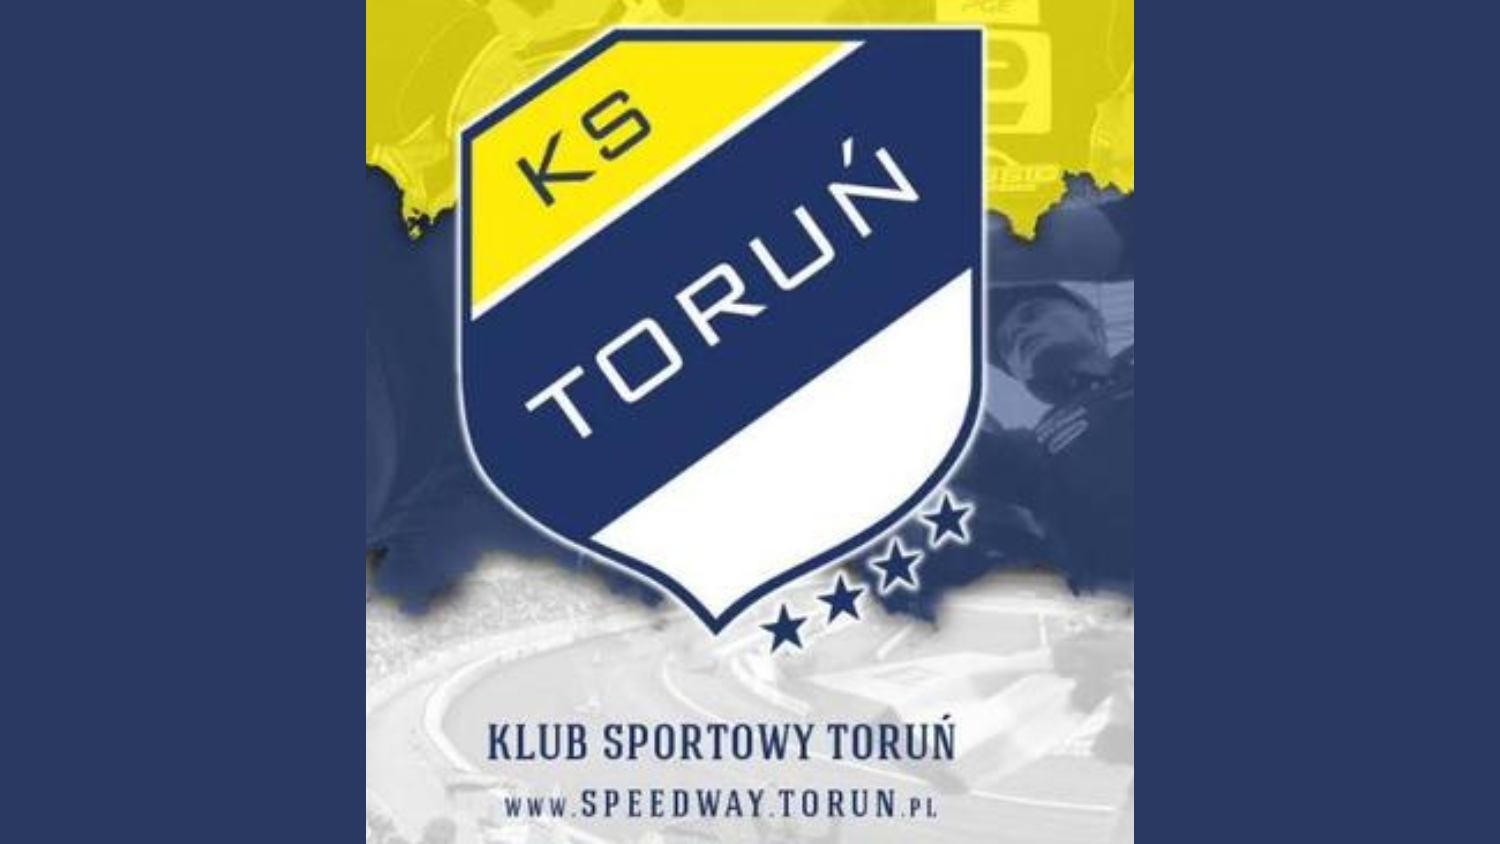 Mecz Sparingowy KS Apator Toruń vs. Zooleszcz GKM Grudziądź